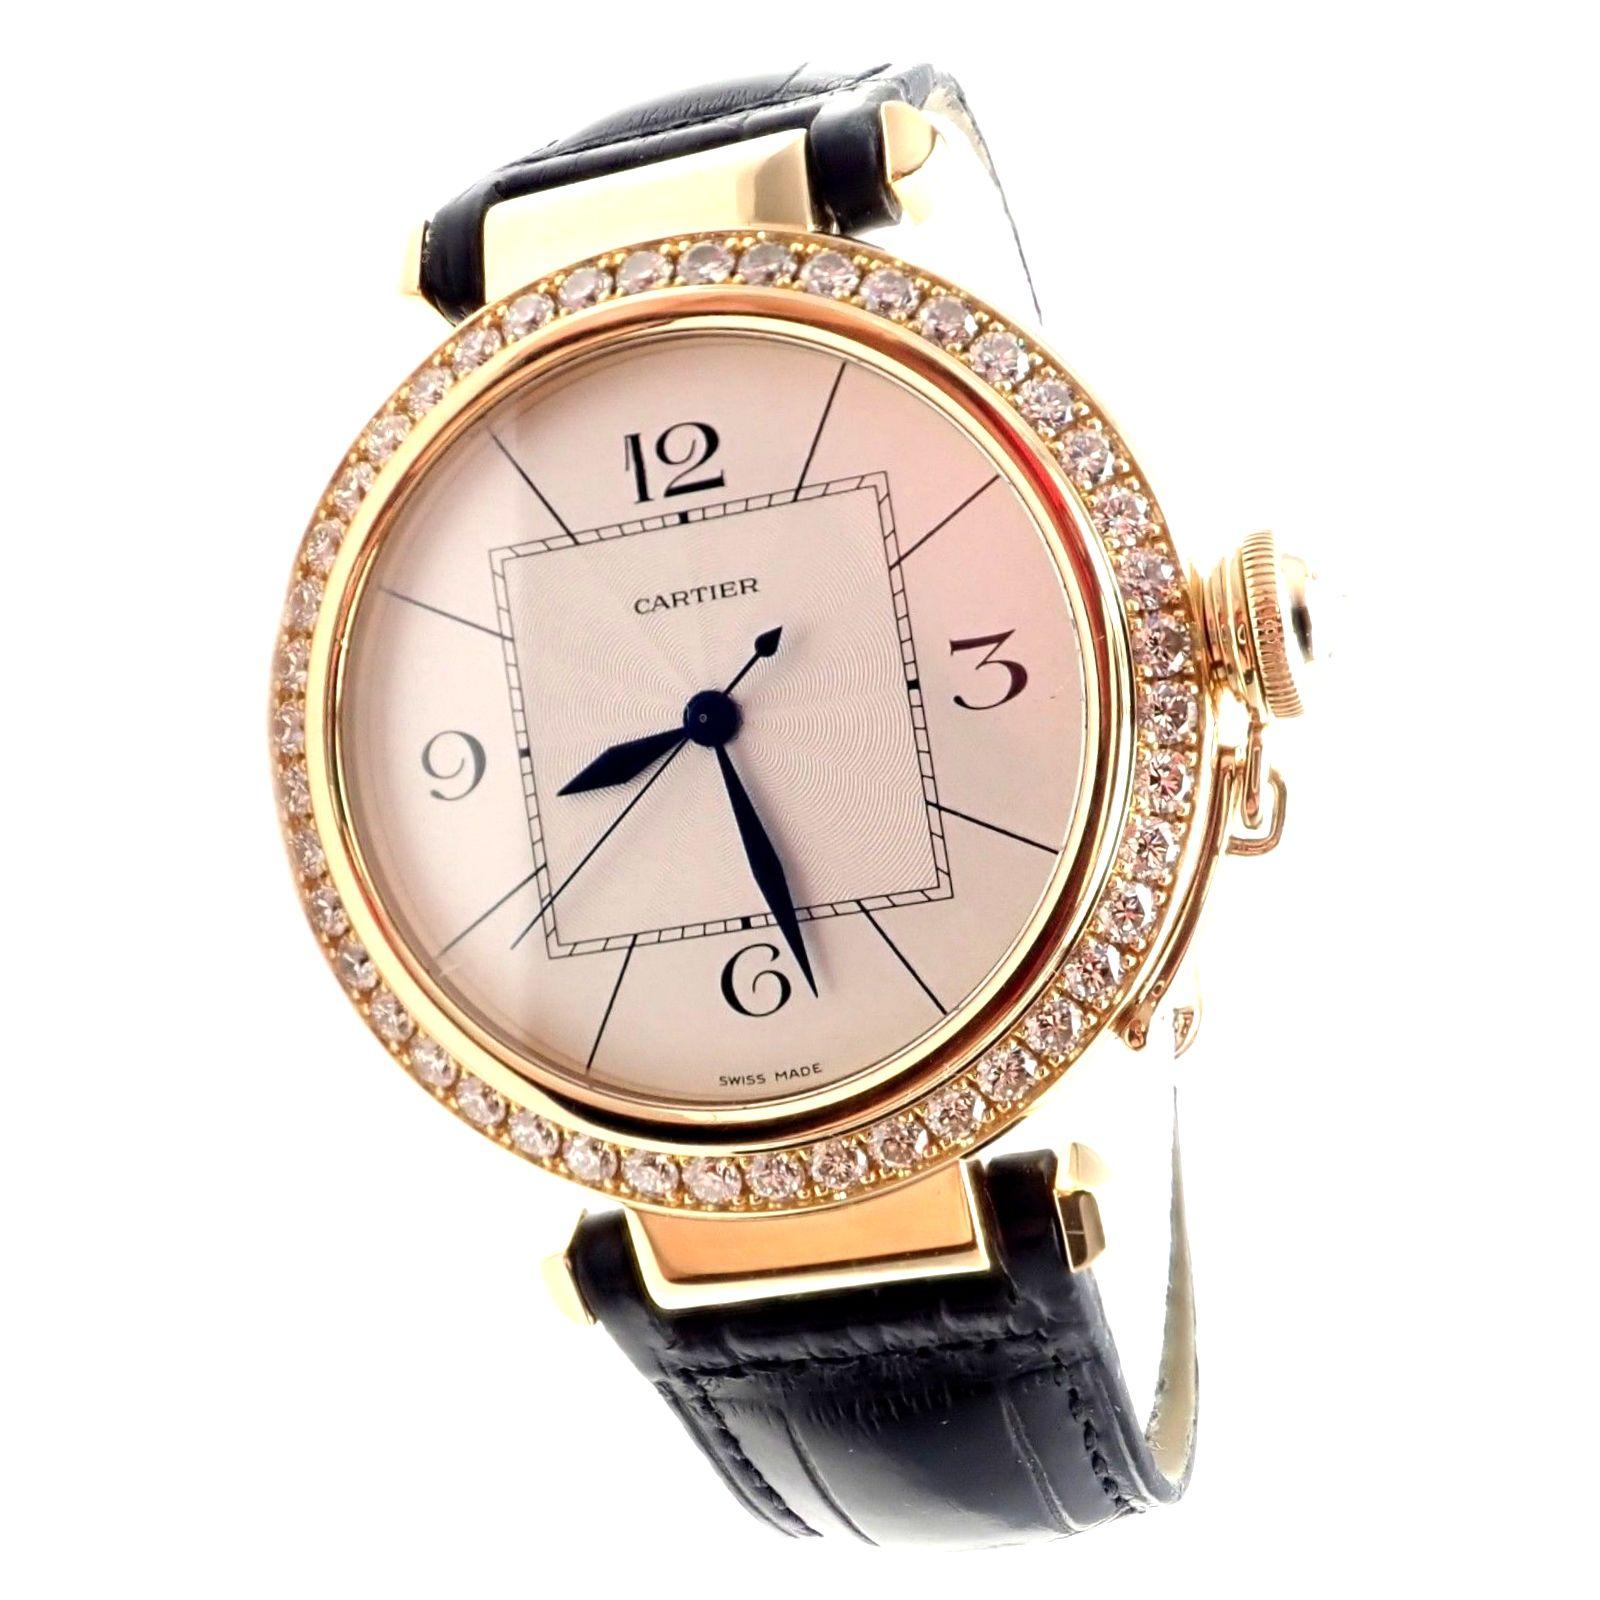 Cartier Pasha Diamond Automatic Yellow Gold Watch 4